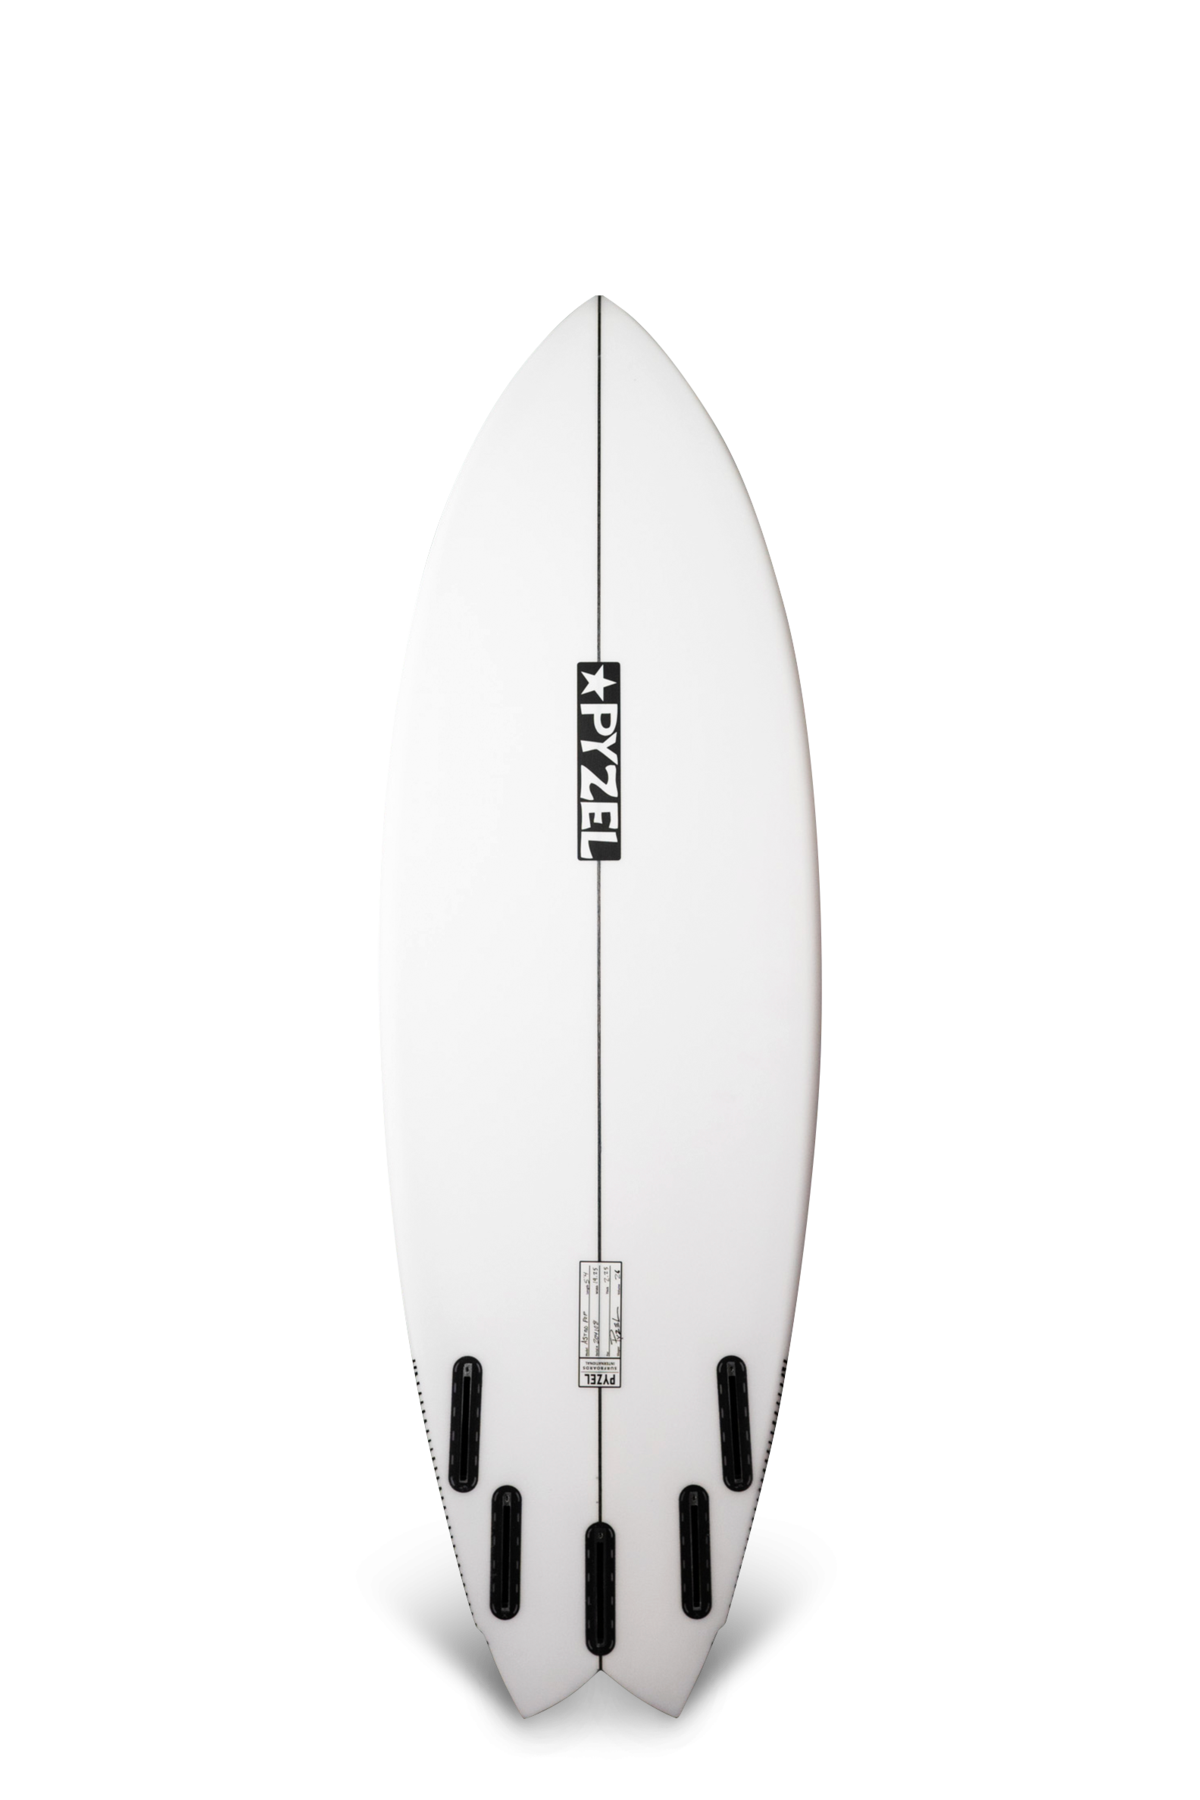 Planche de surf Pyzel Astro pop 5'6" PU Futures  5 Fins - 27,8L